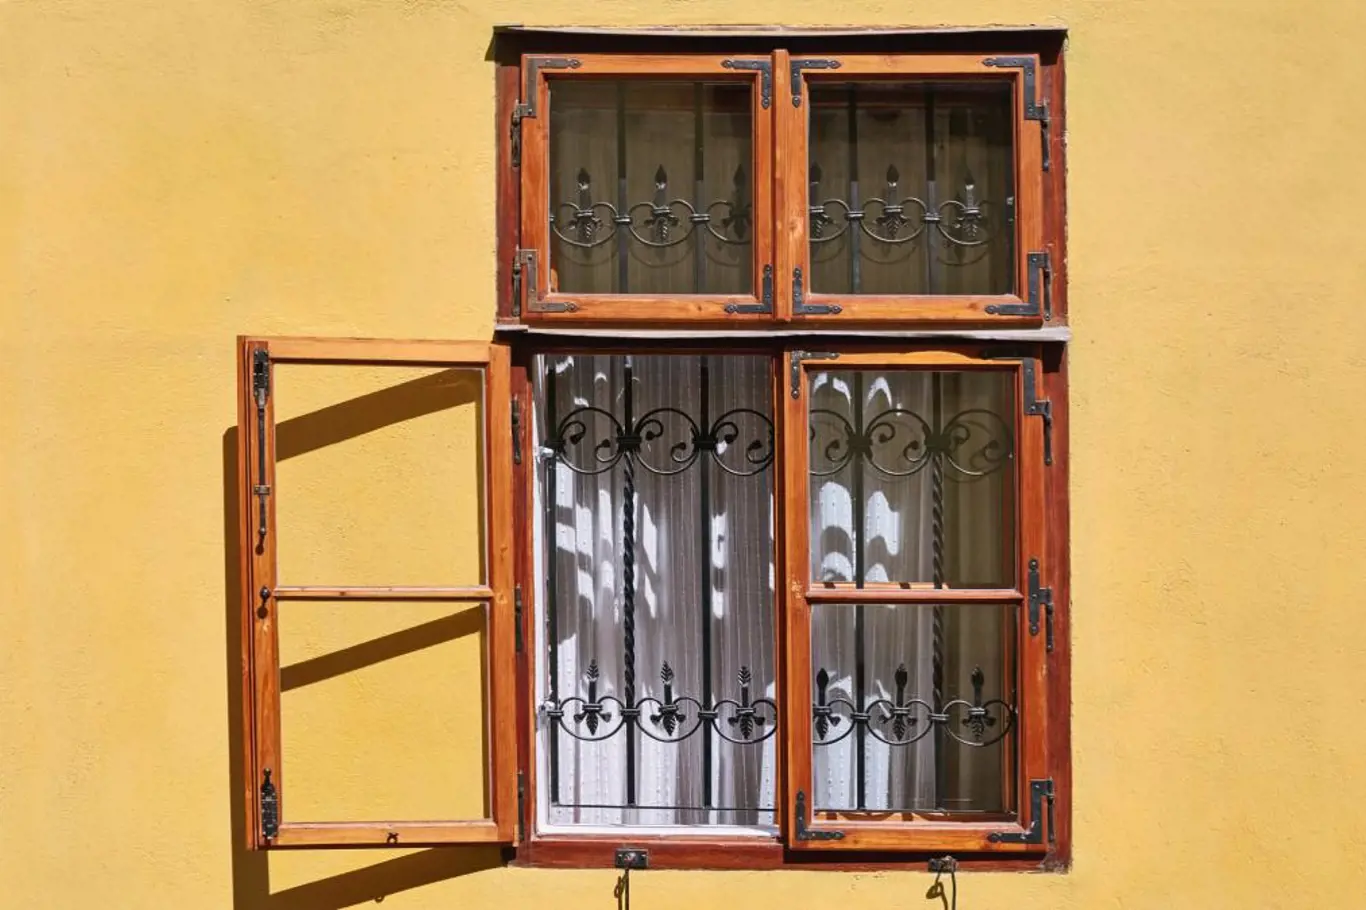 Typický příklad špaletového okna